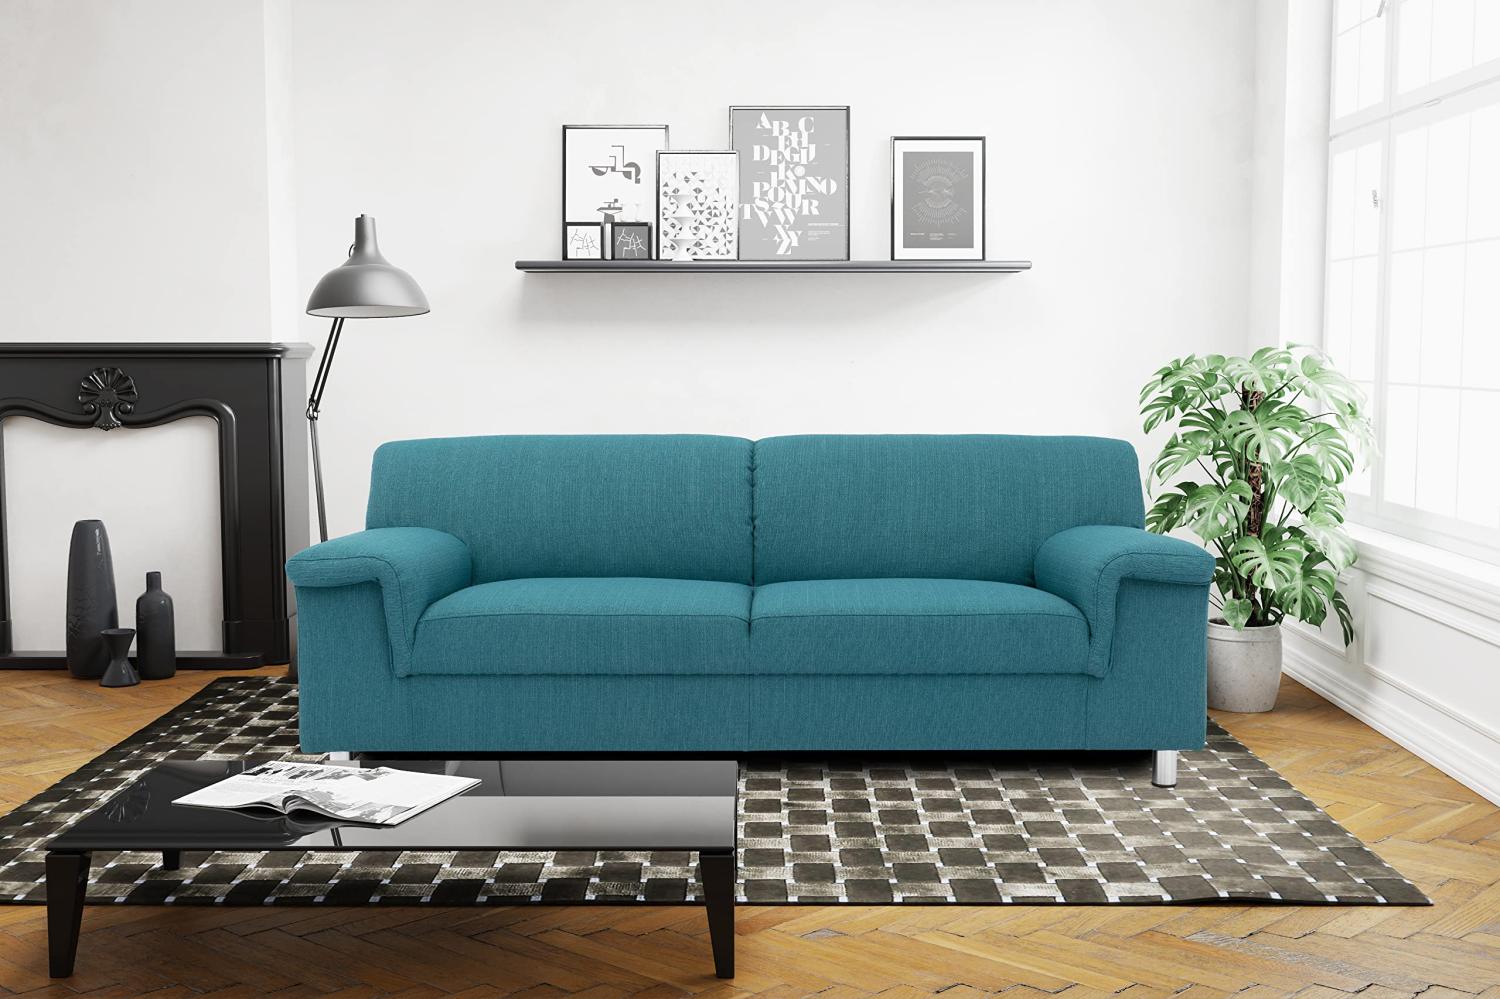 DOMO Collection Jamie Sofa 2er Couch, Garnitur 2 Sitzer, türkis, 190 x 80 x 72 cm Bild 1